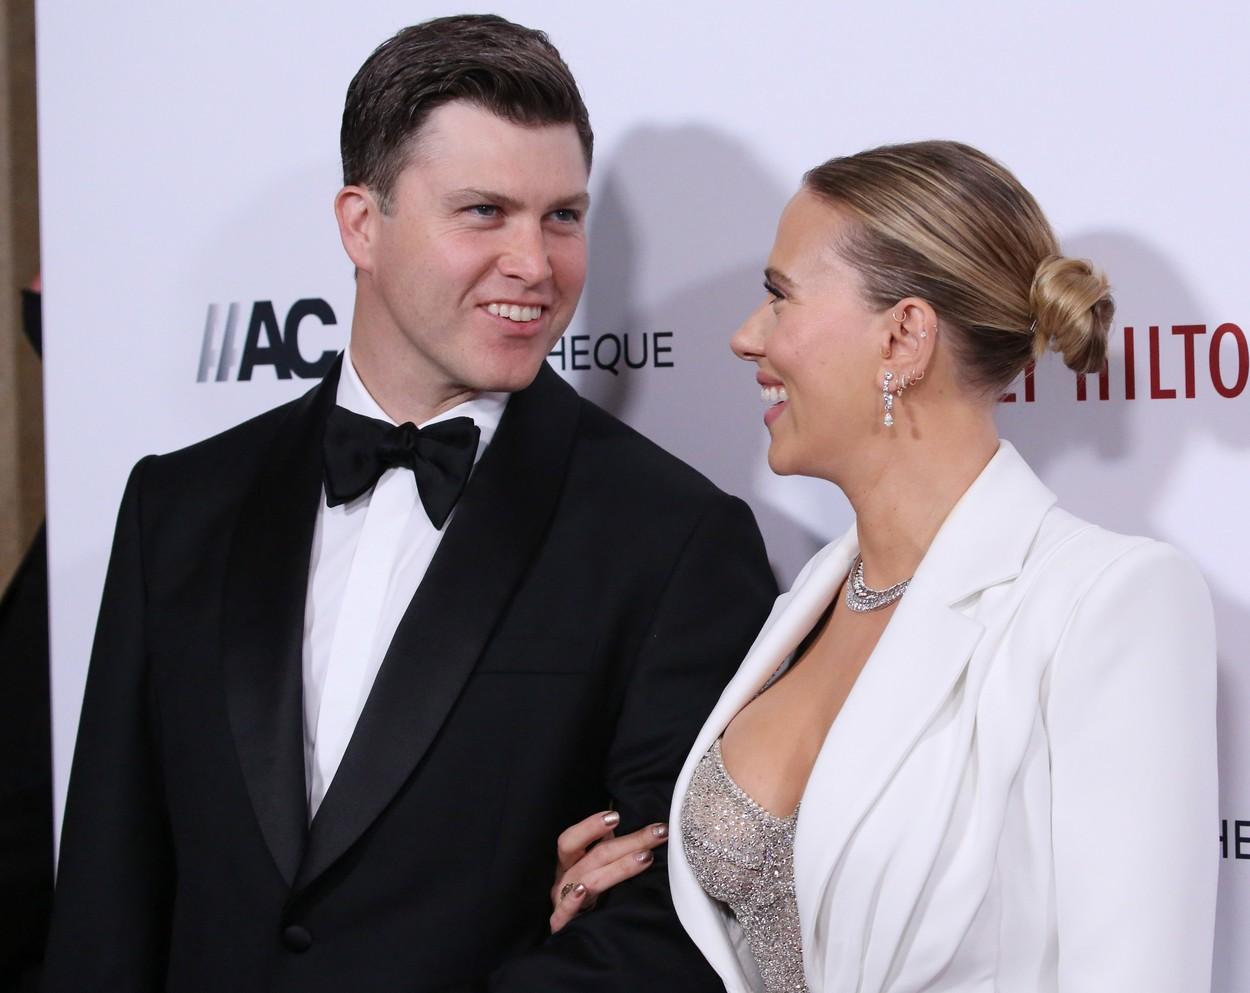 Scarlett Johansson si sotul ei se privesc si isi zambesc indragostiti, pe covorul rosu, unde ea este imbracat intr-un costum alb si el poarta un costum negru.